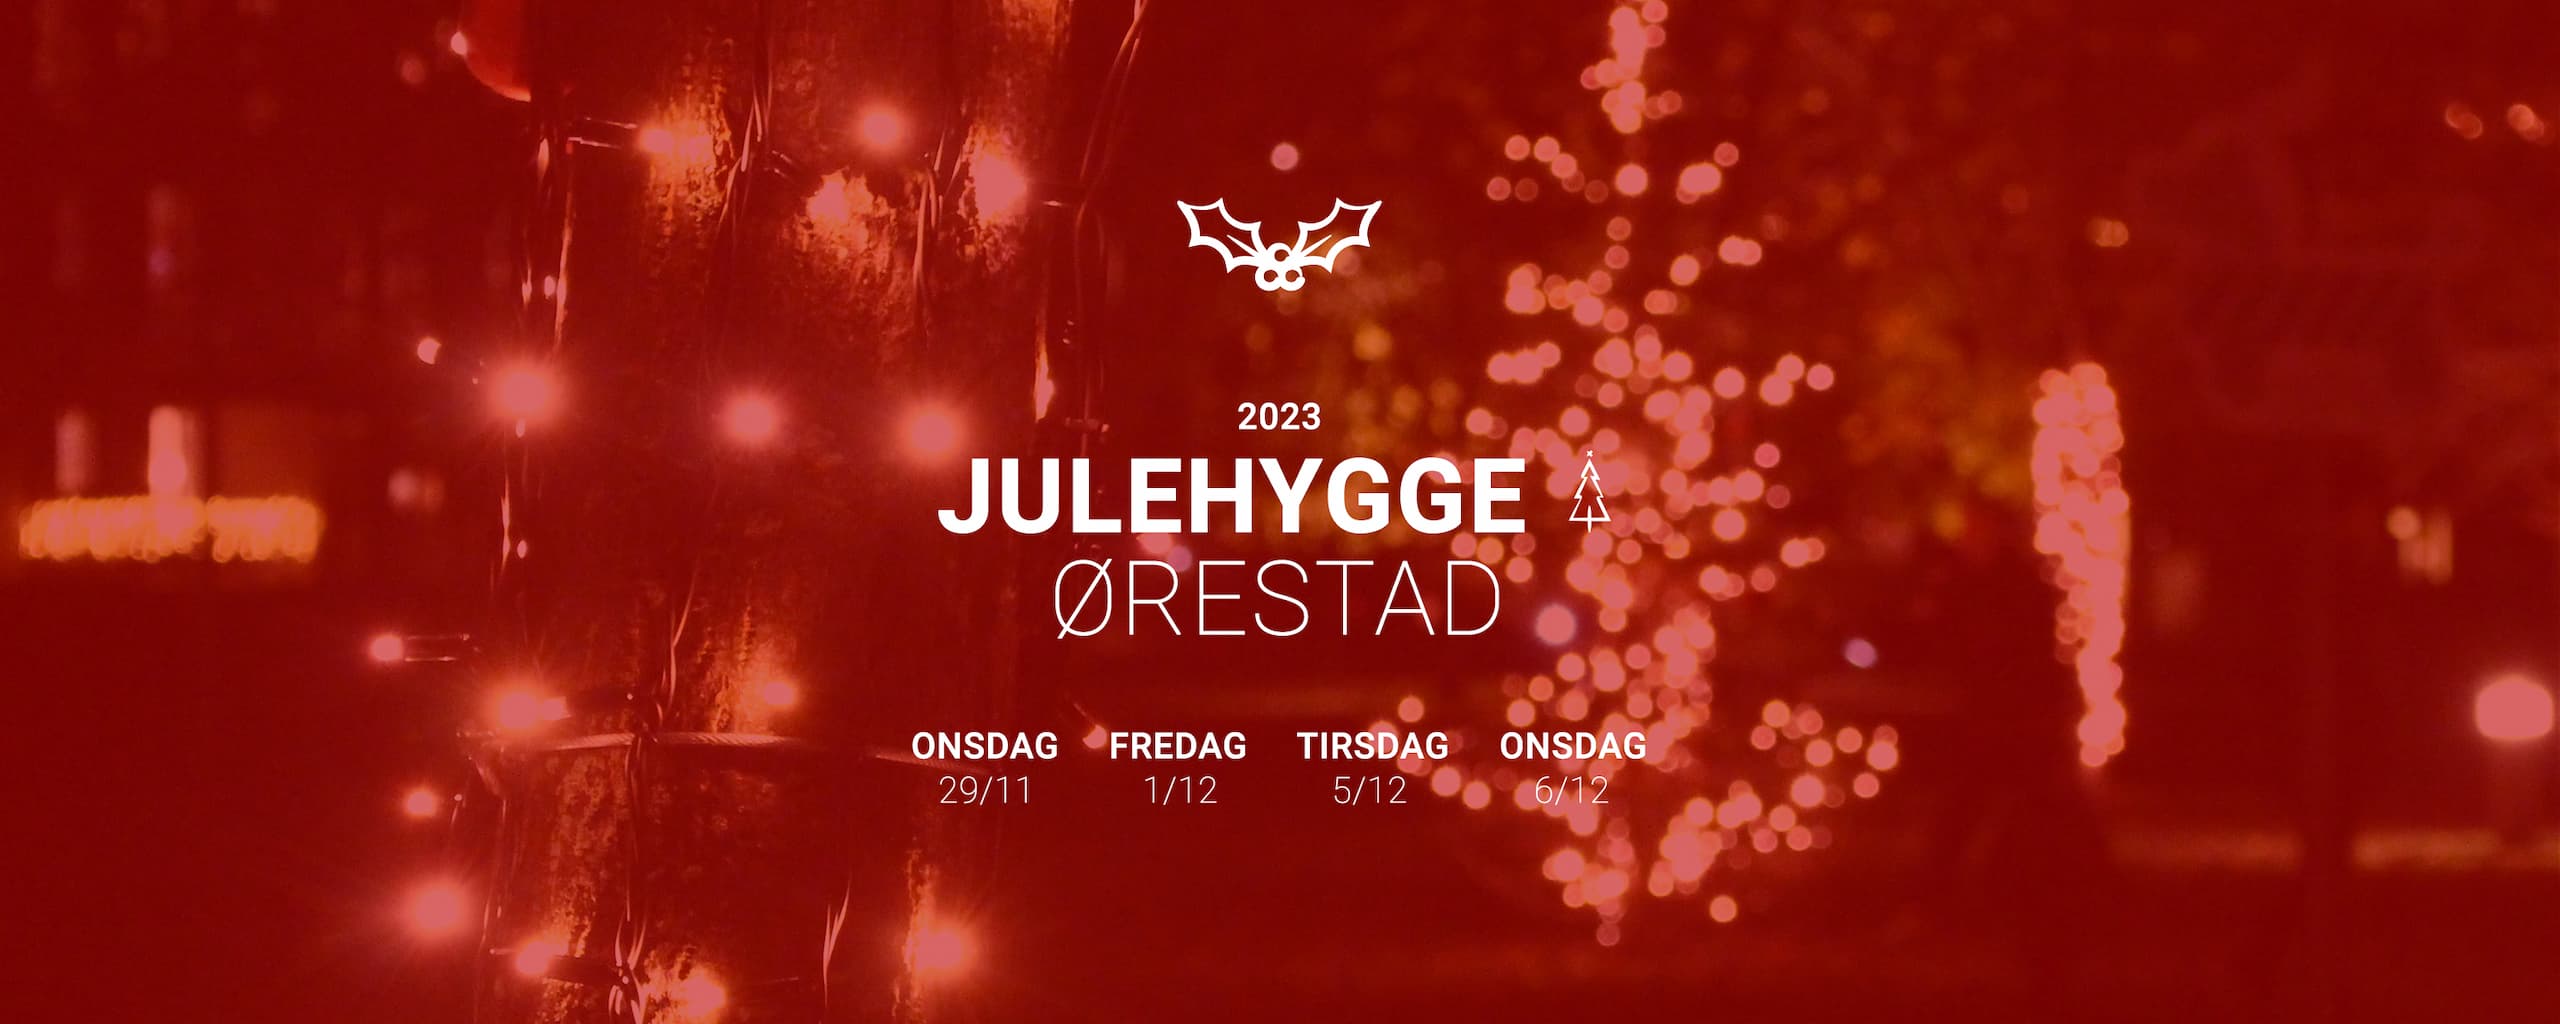 Datoer for julefest og julehygge i Ørestads kvarterer i 2023.